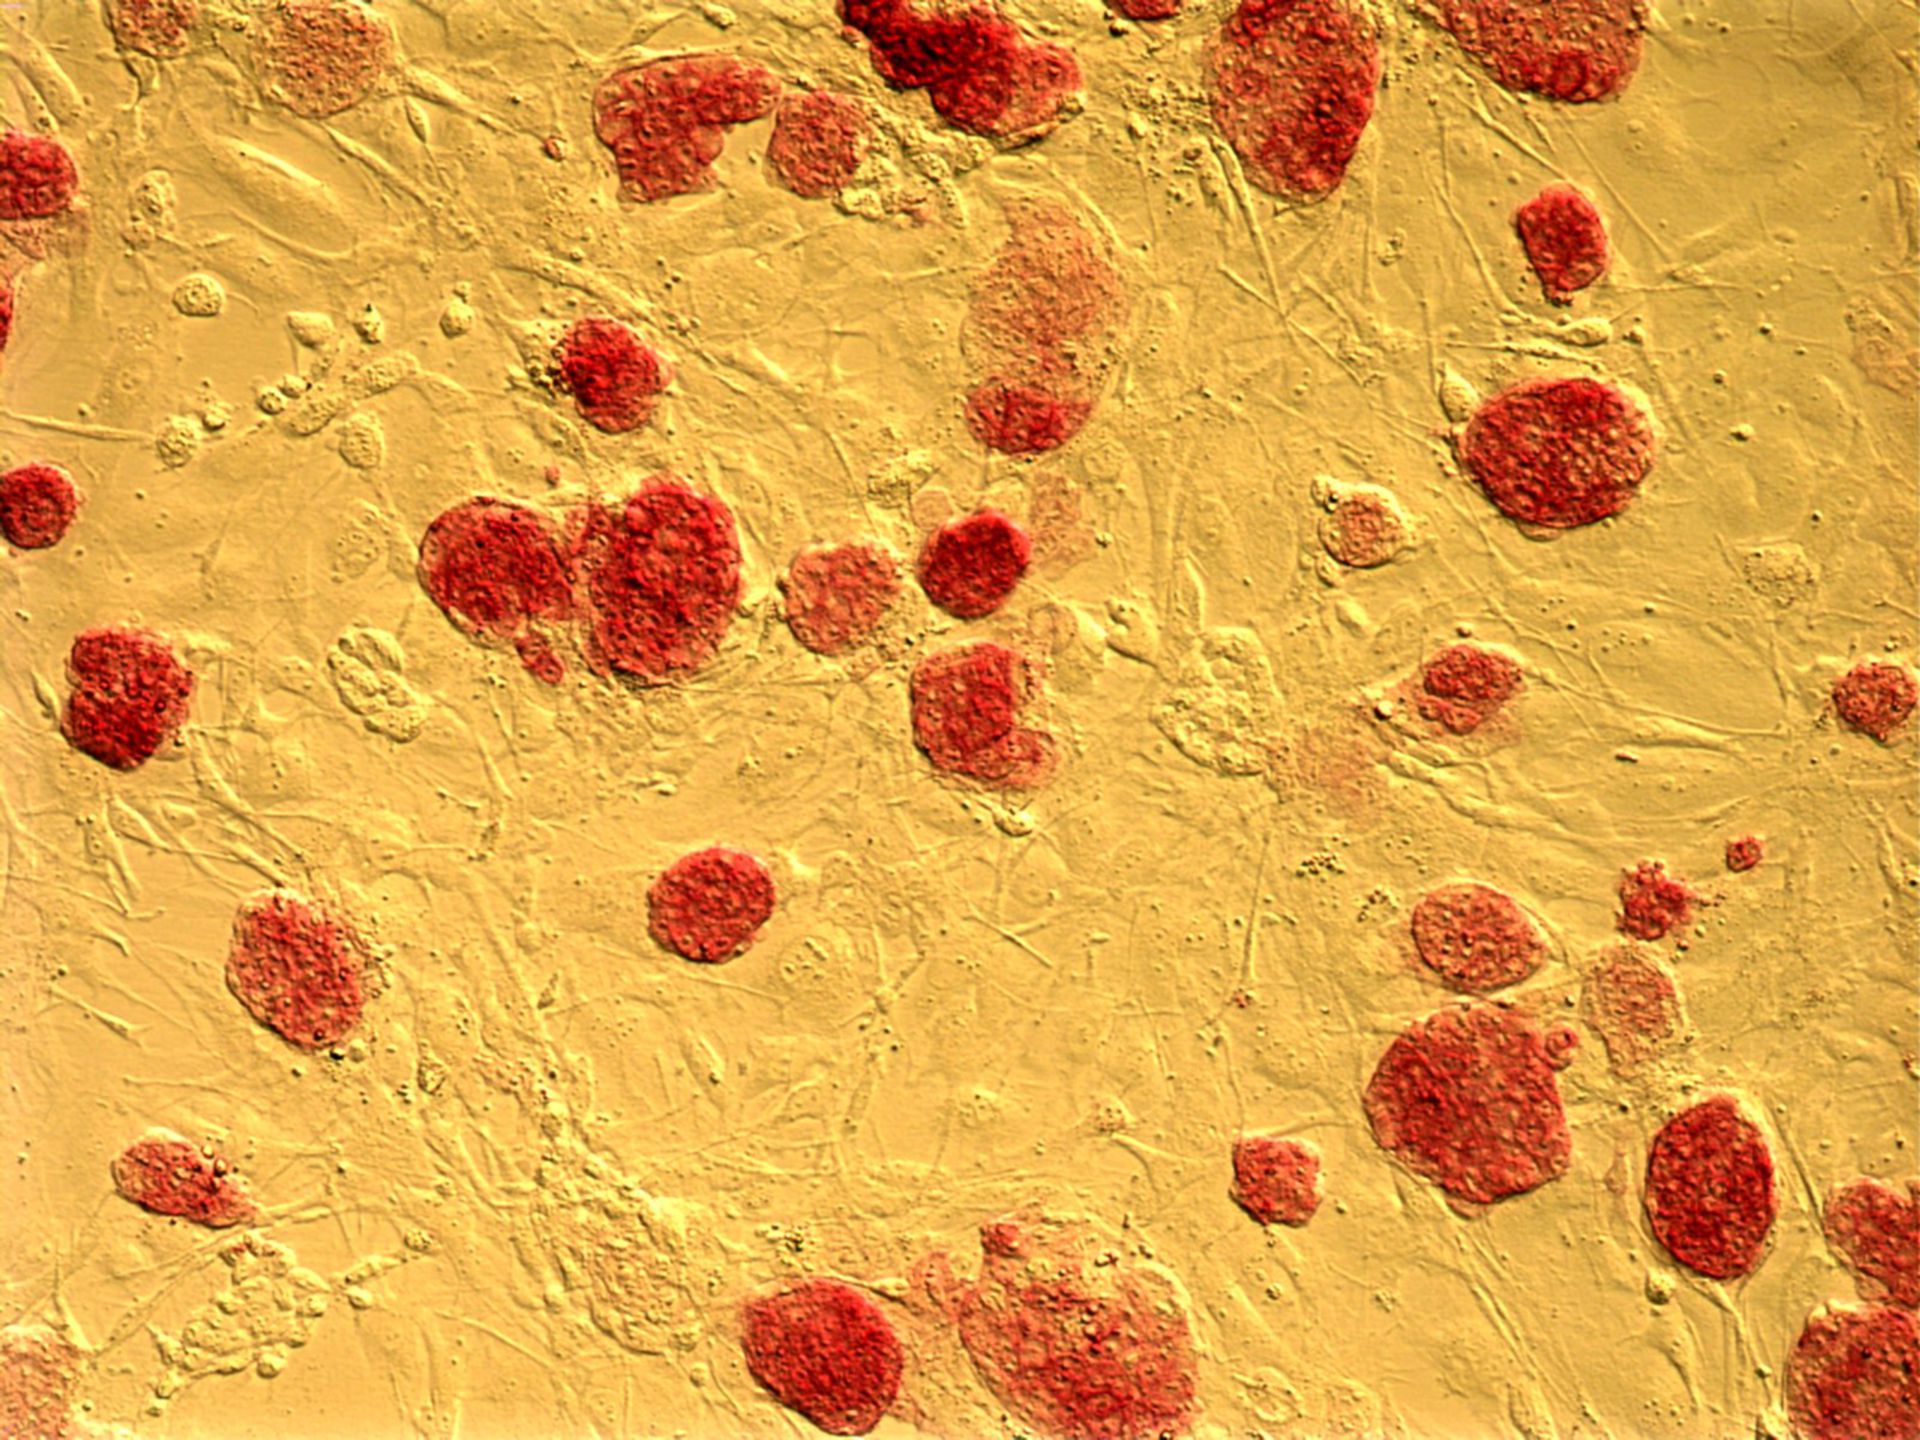 Homo sapiens (Embryonic stem cell) - CIL:12630